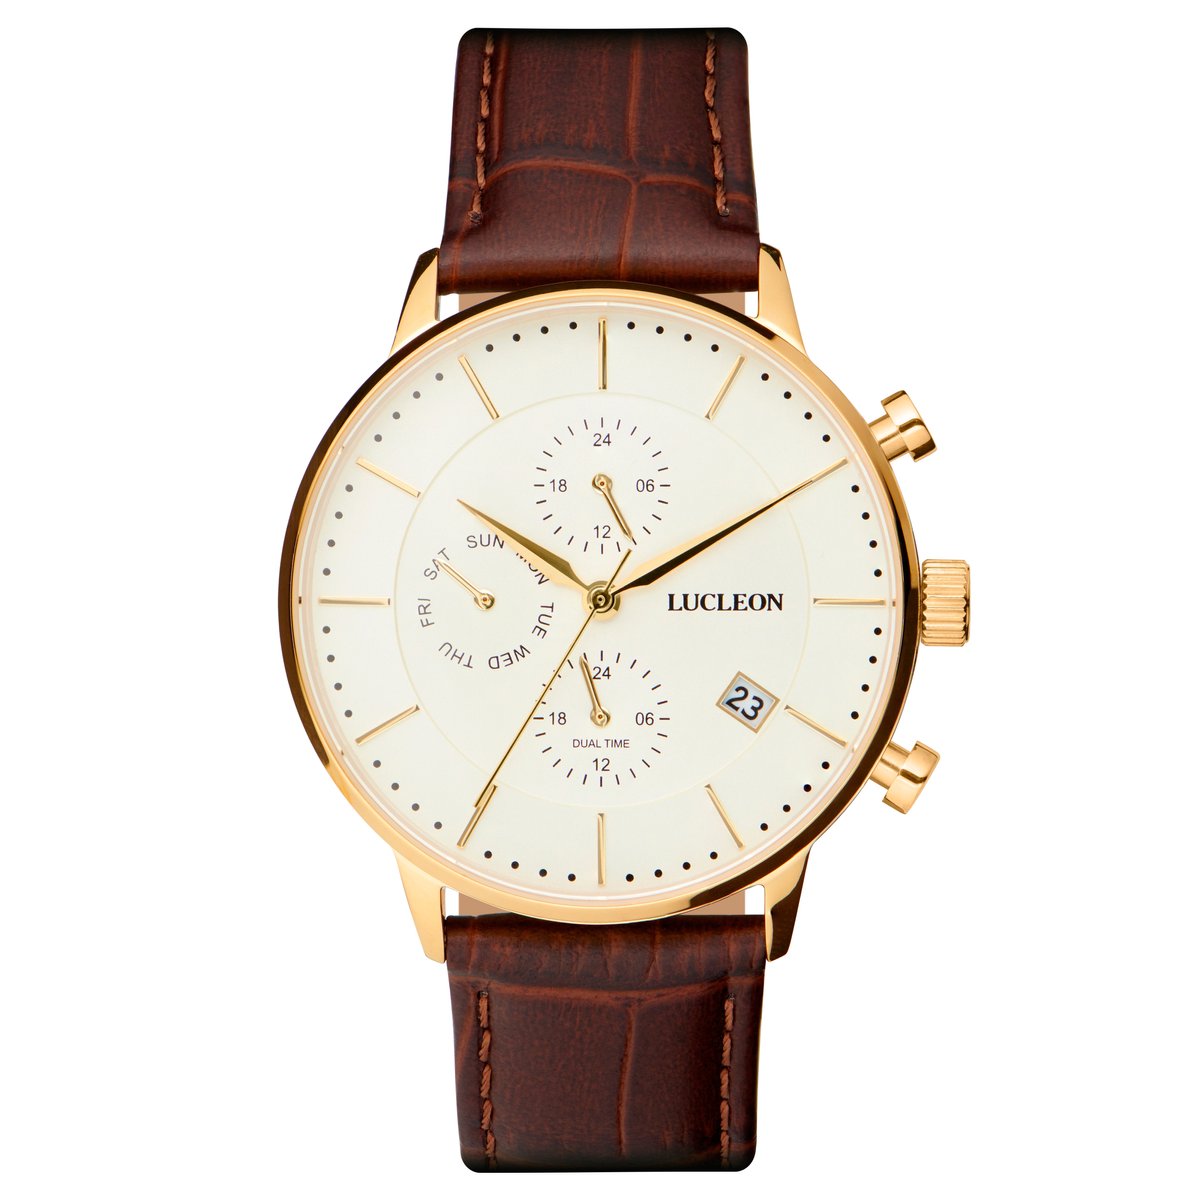 Lucleon Laurens Ternion roestvrijstalen horloge met dubbele tijdzone voor heren